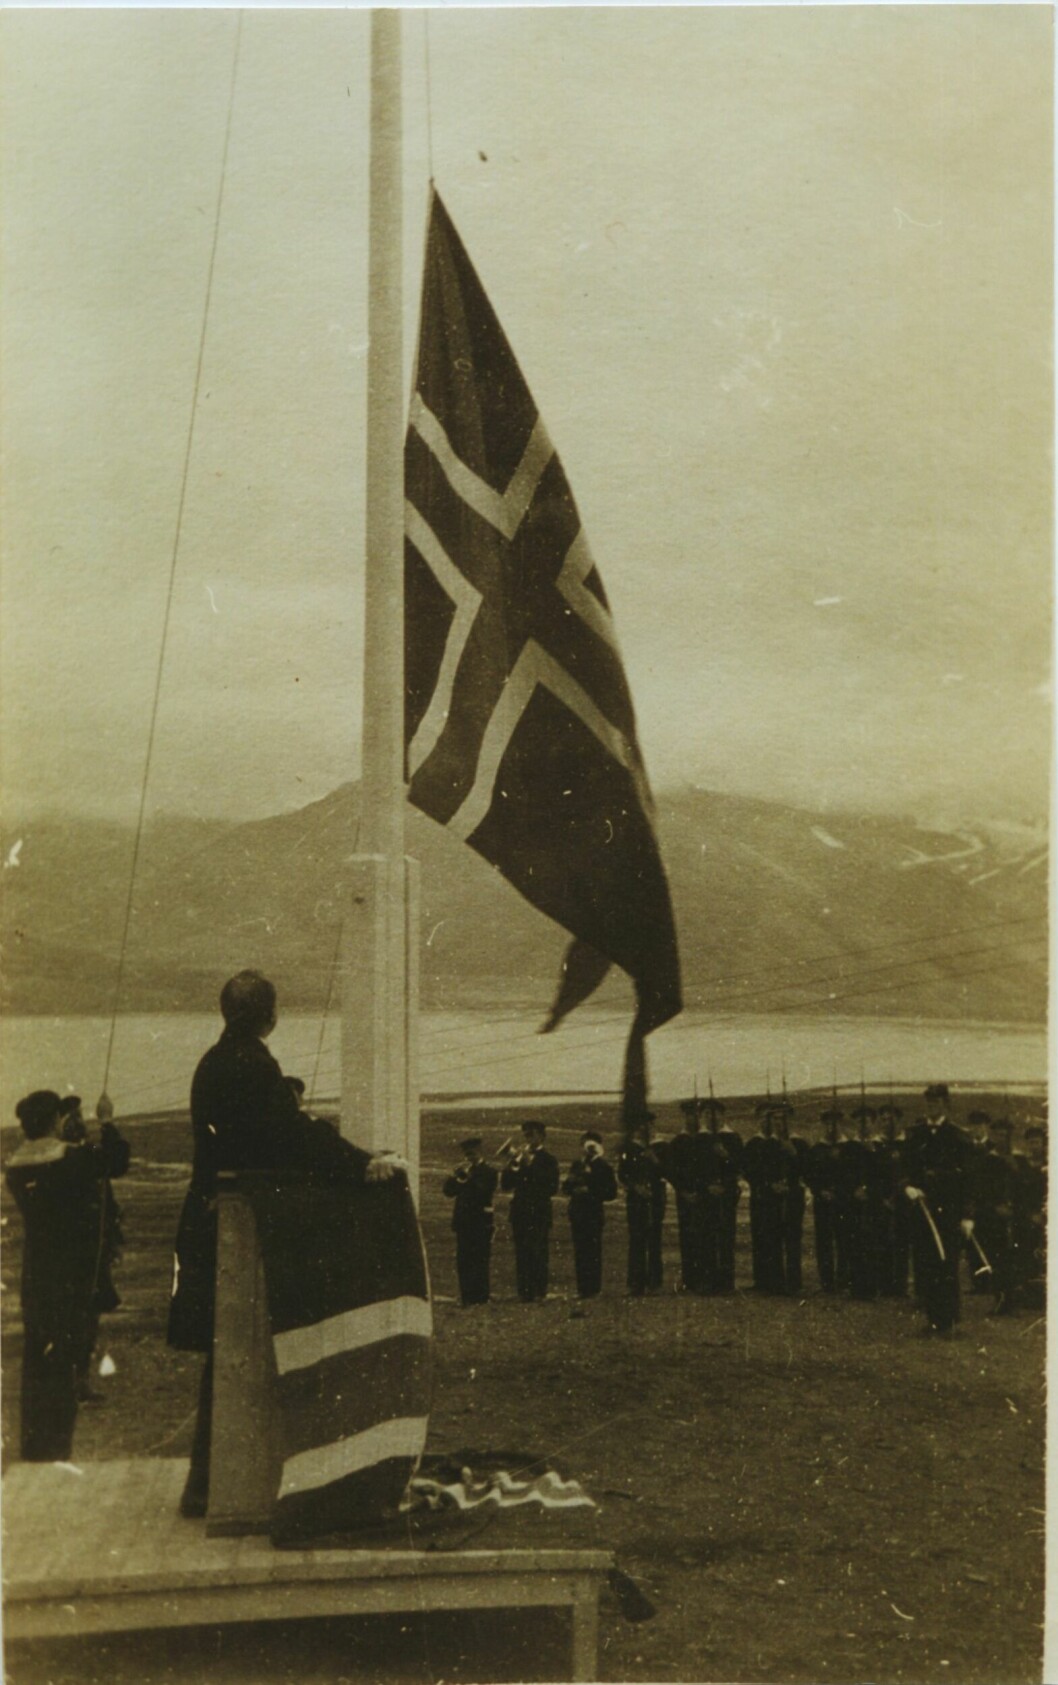 Dette historiske bilde har Svalbardposten fått fra Svalbard Museum. Om noen har mer informasjon om bildet, send gjerne epost til: post@svalbardposten.no.